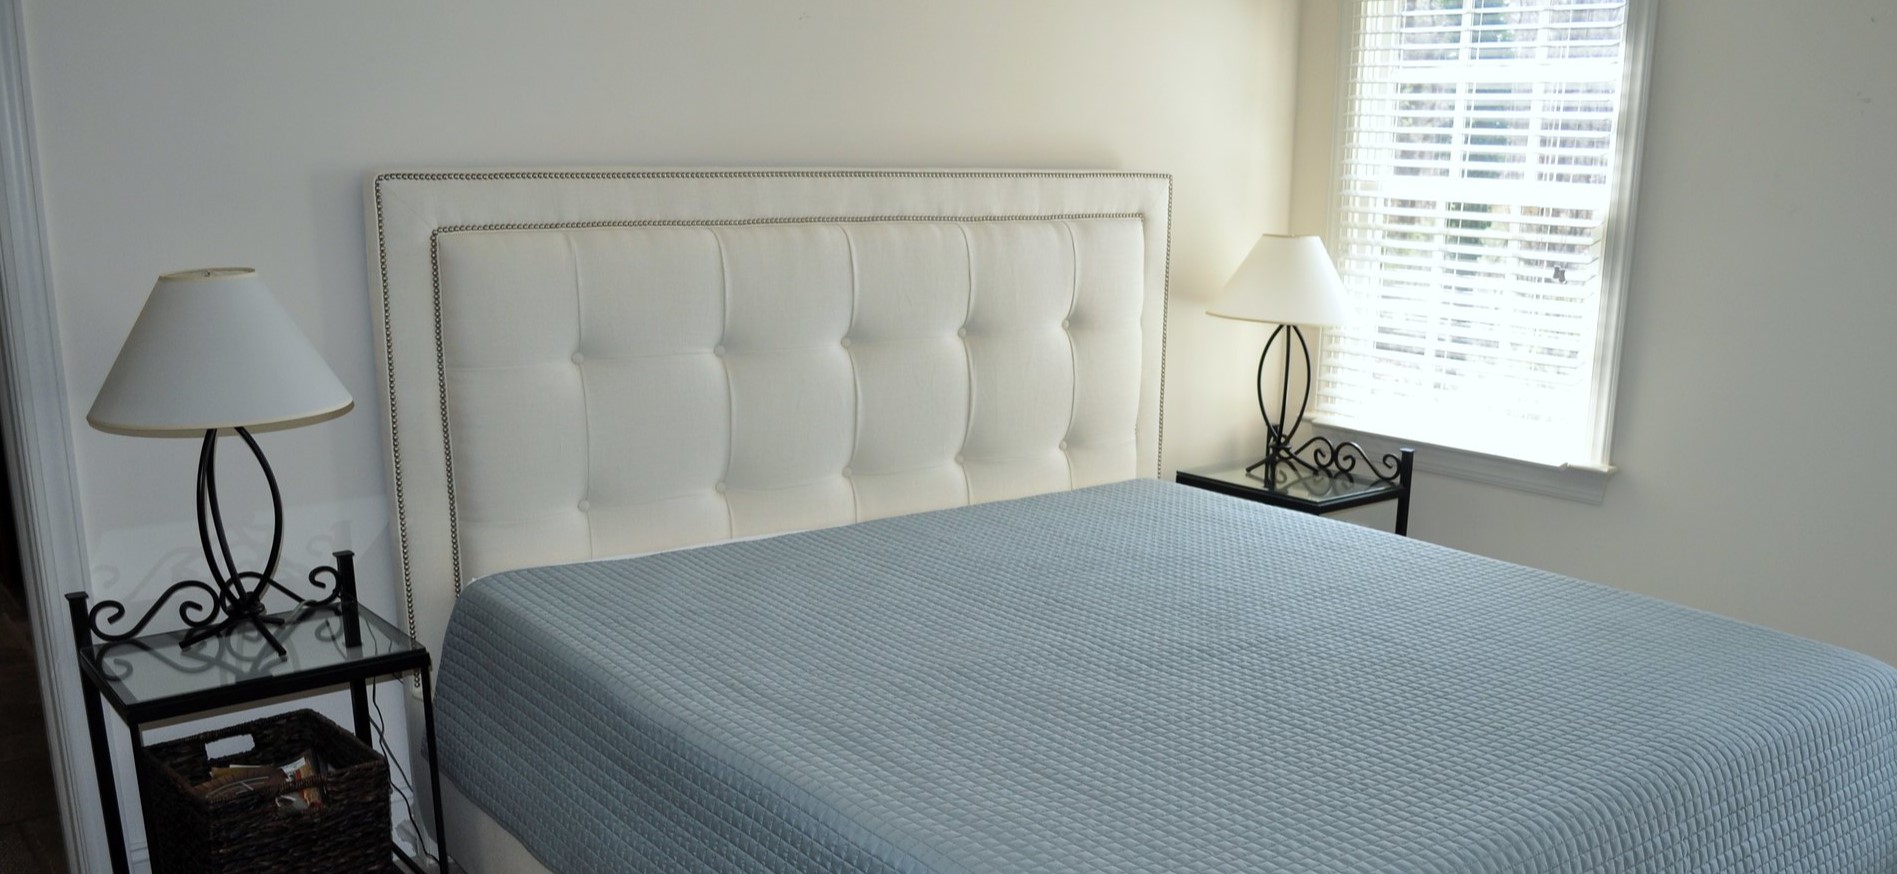 Мягкое белое изголовье кровати подойдет под современный интерьер спальни